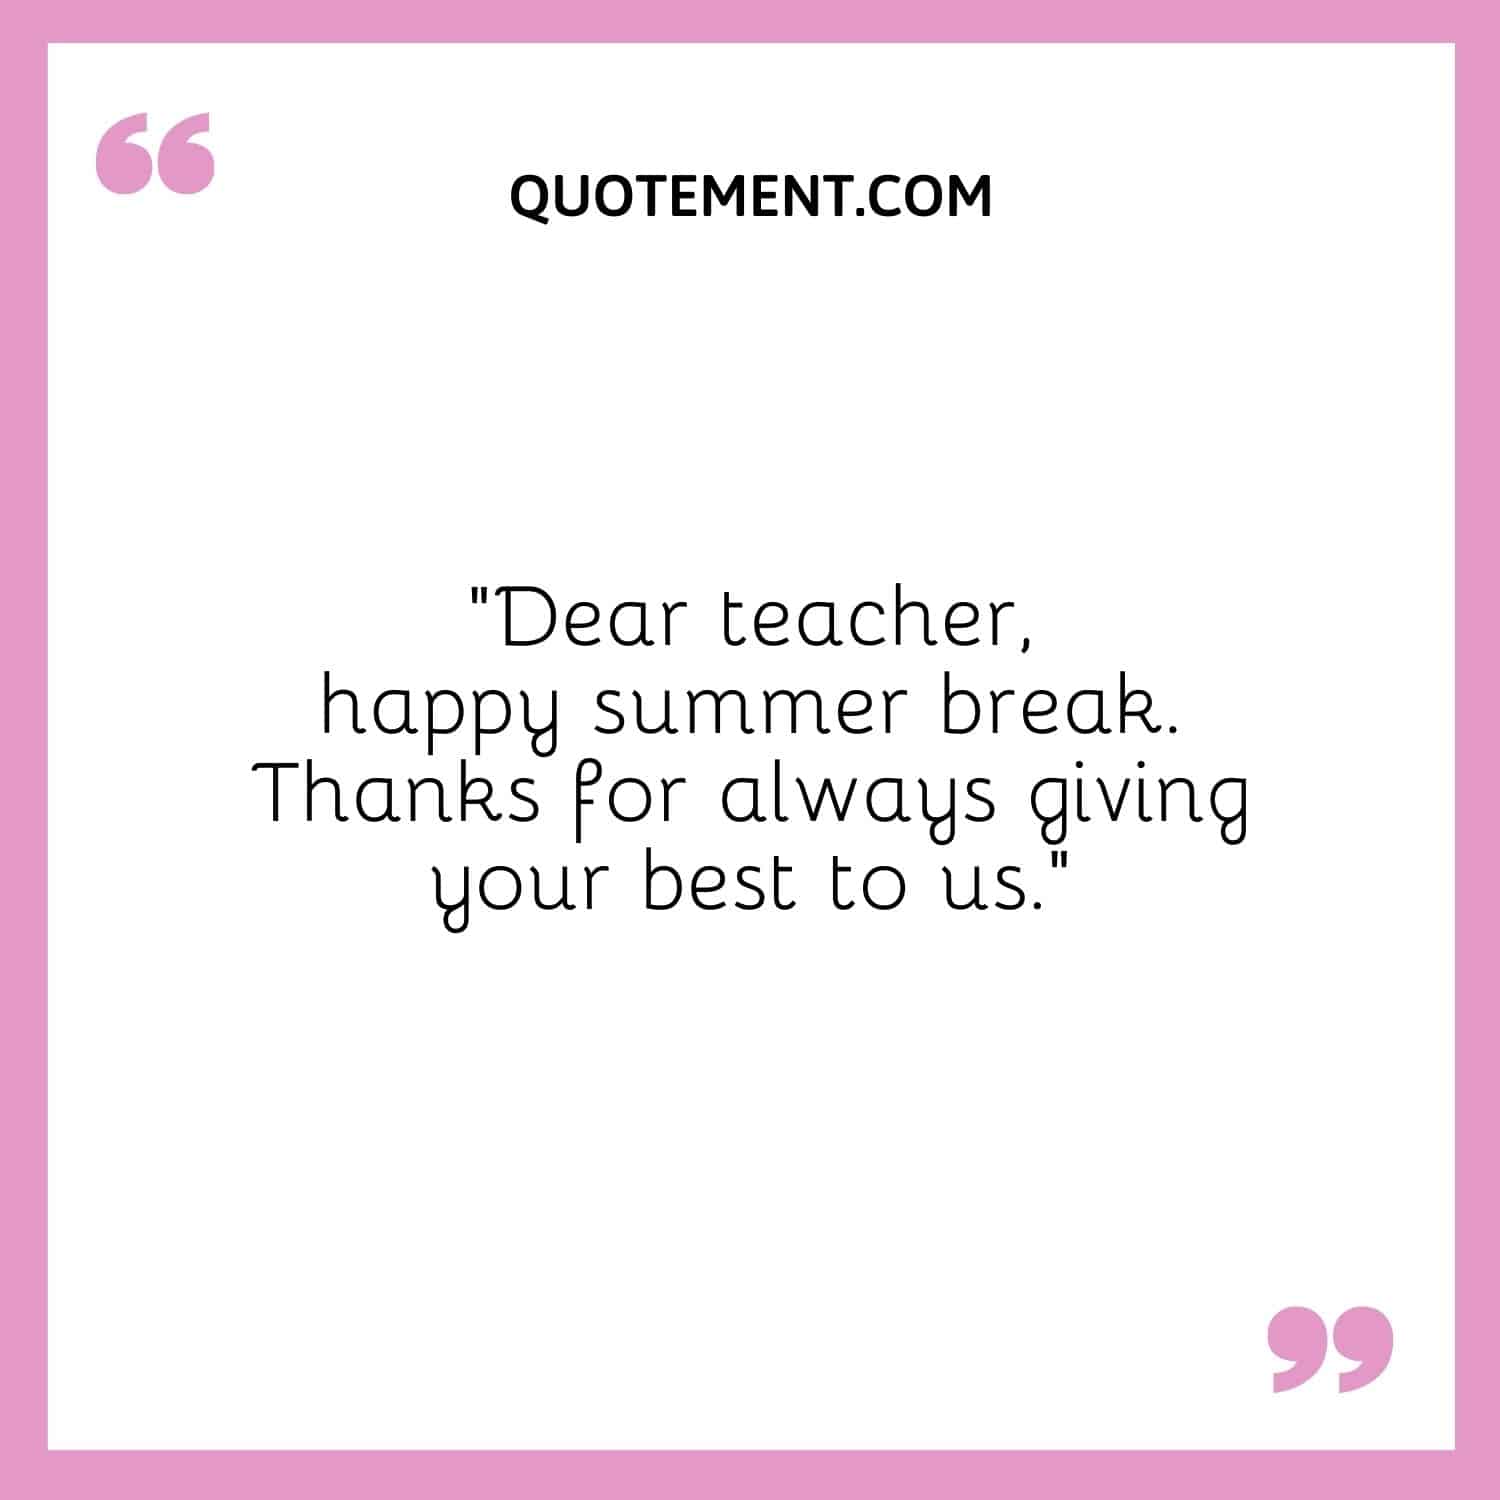 Dear teacher, happy summer break